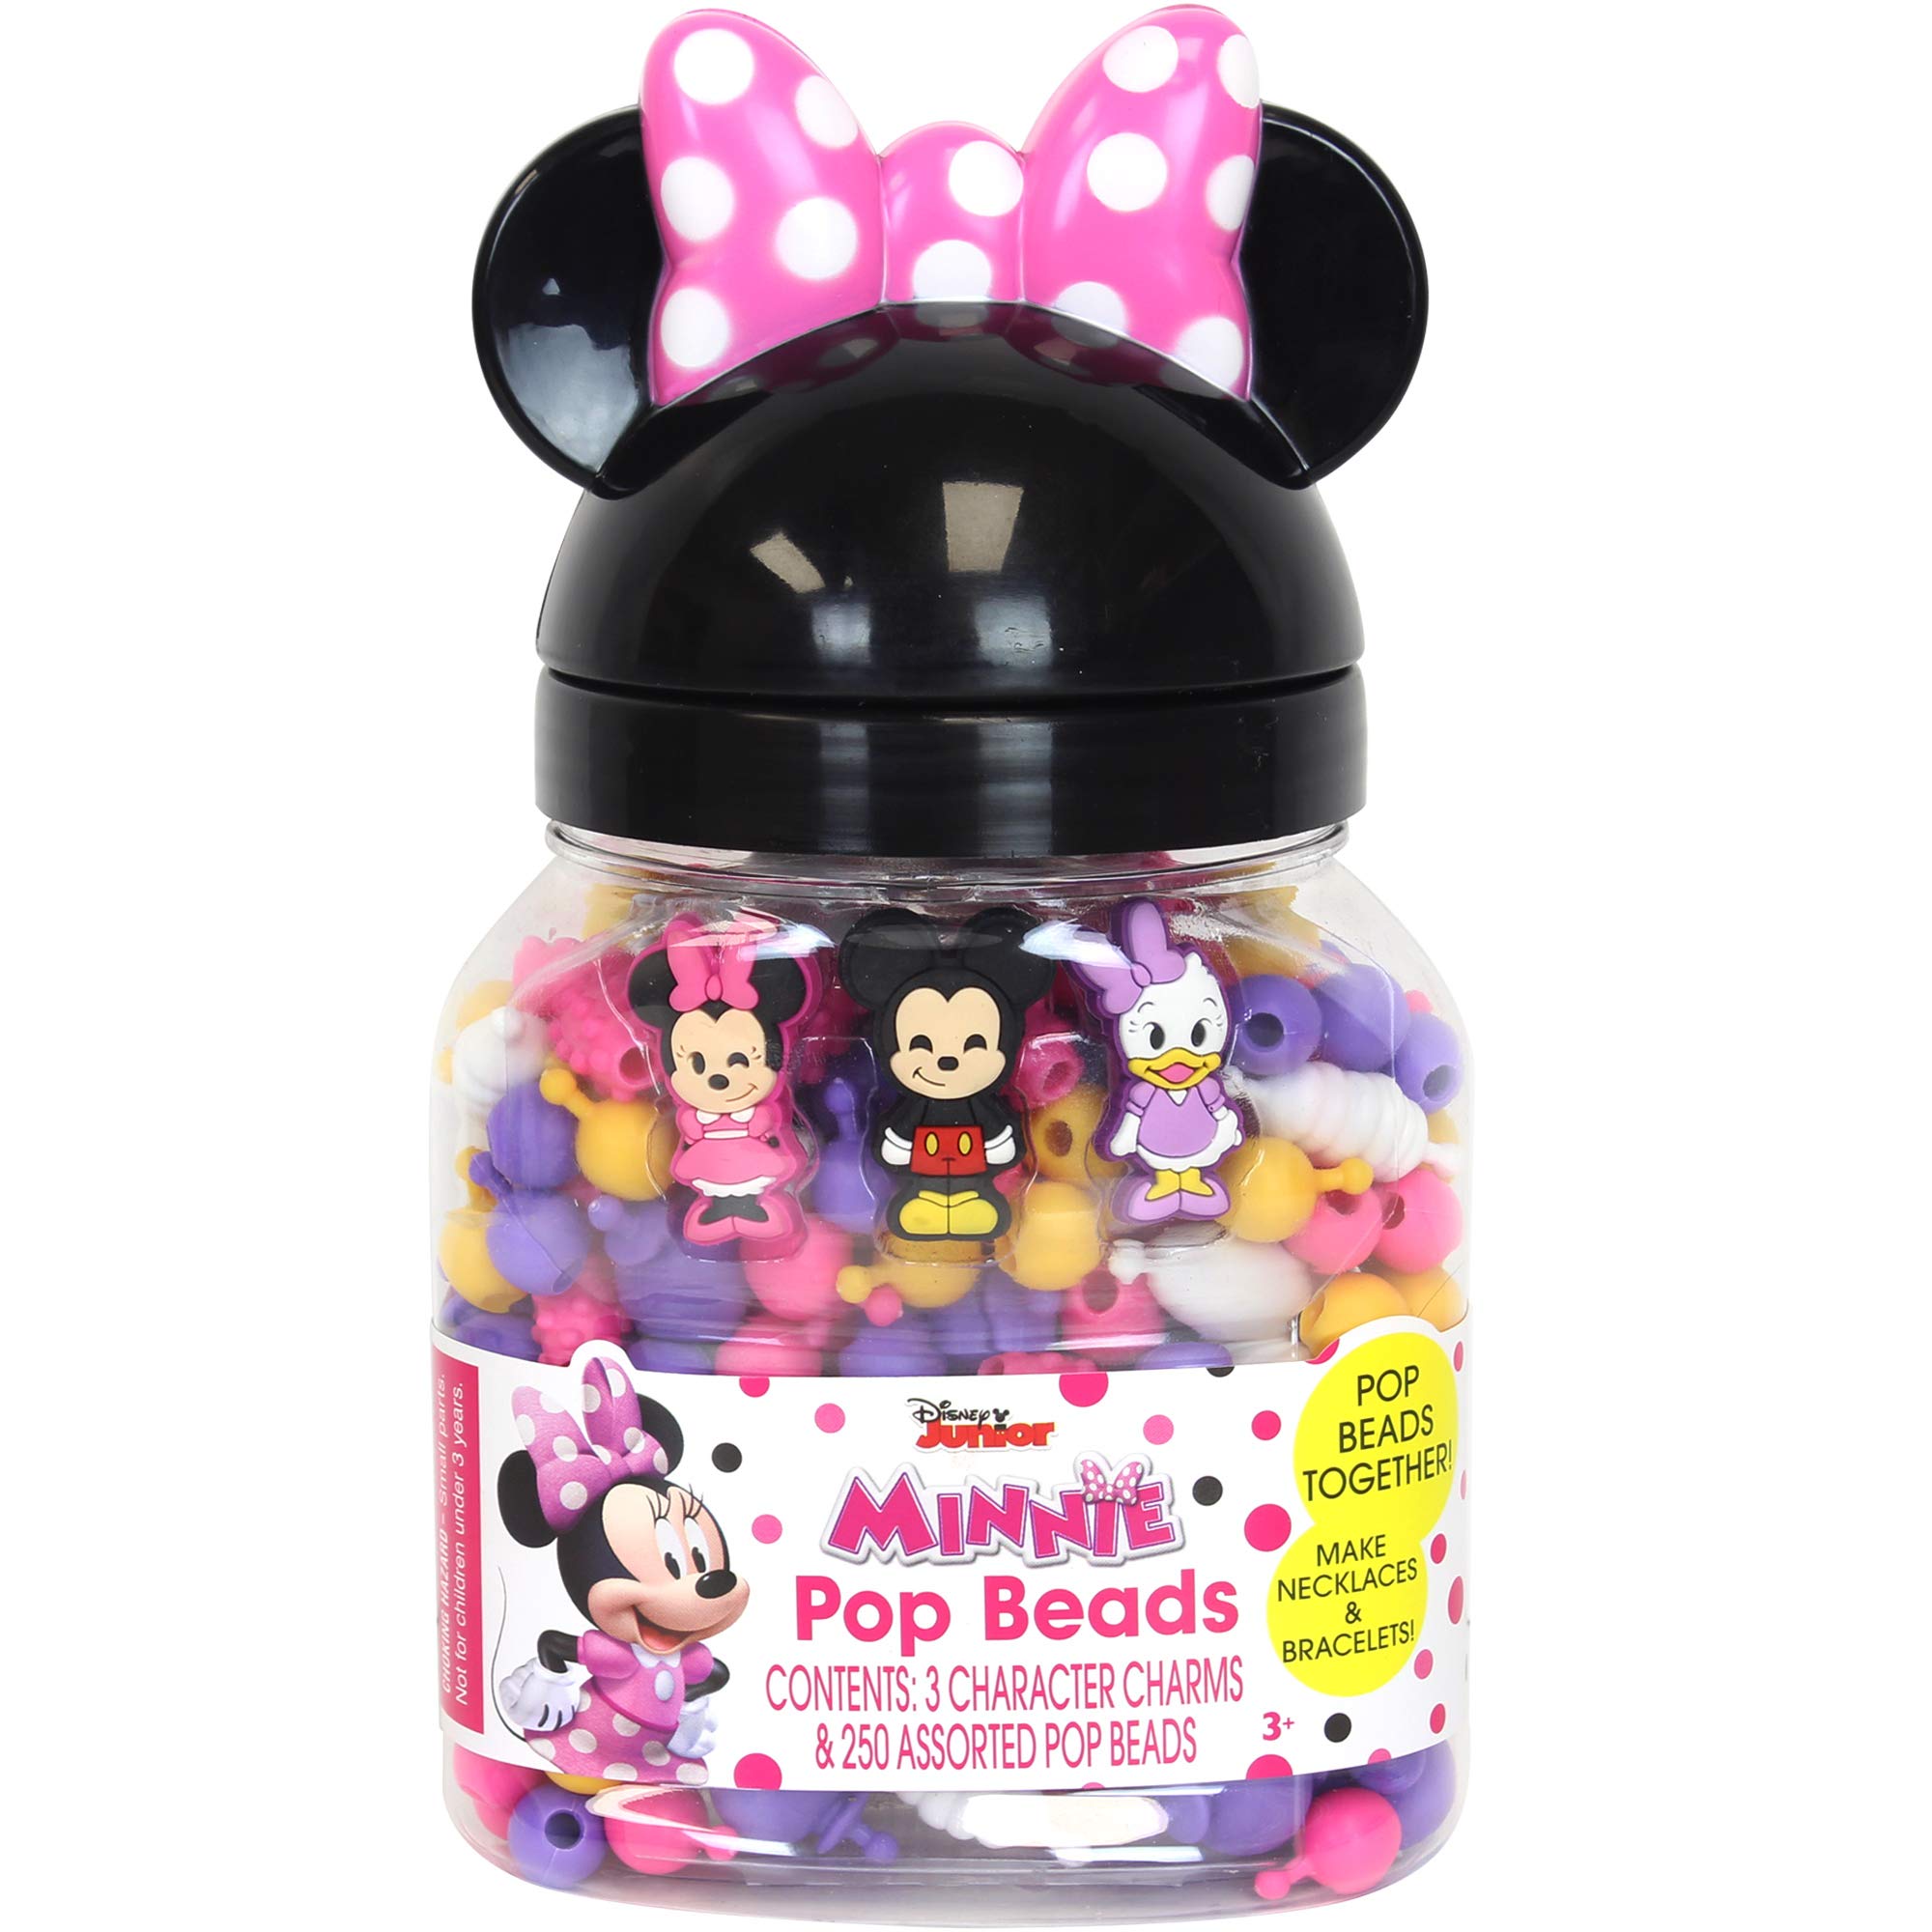 Tara Toy Minnie Pop Beads